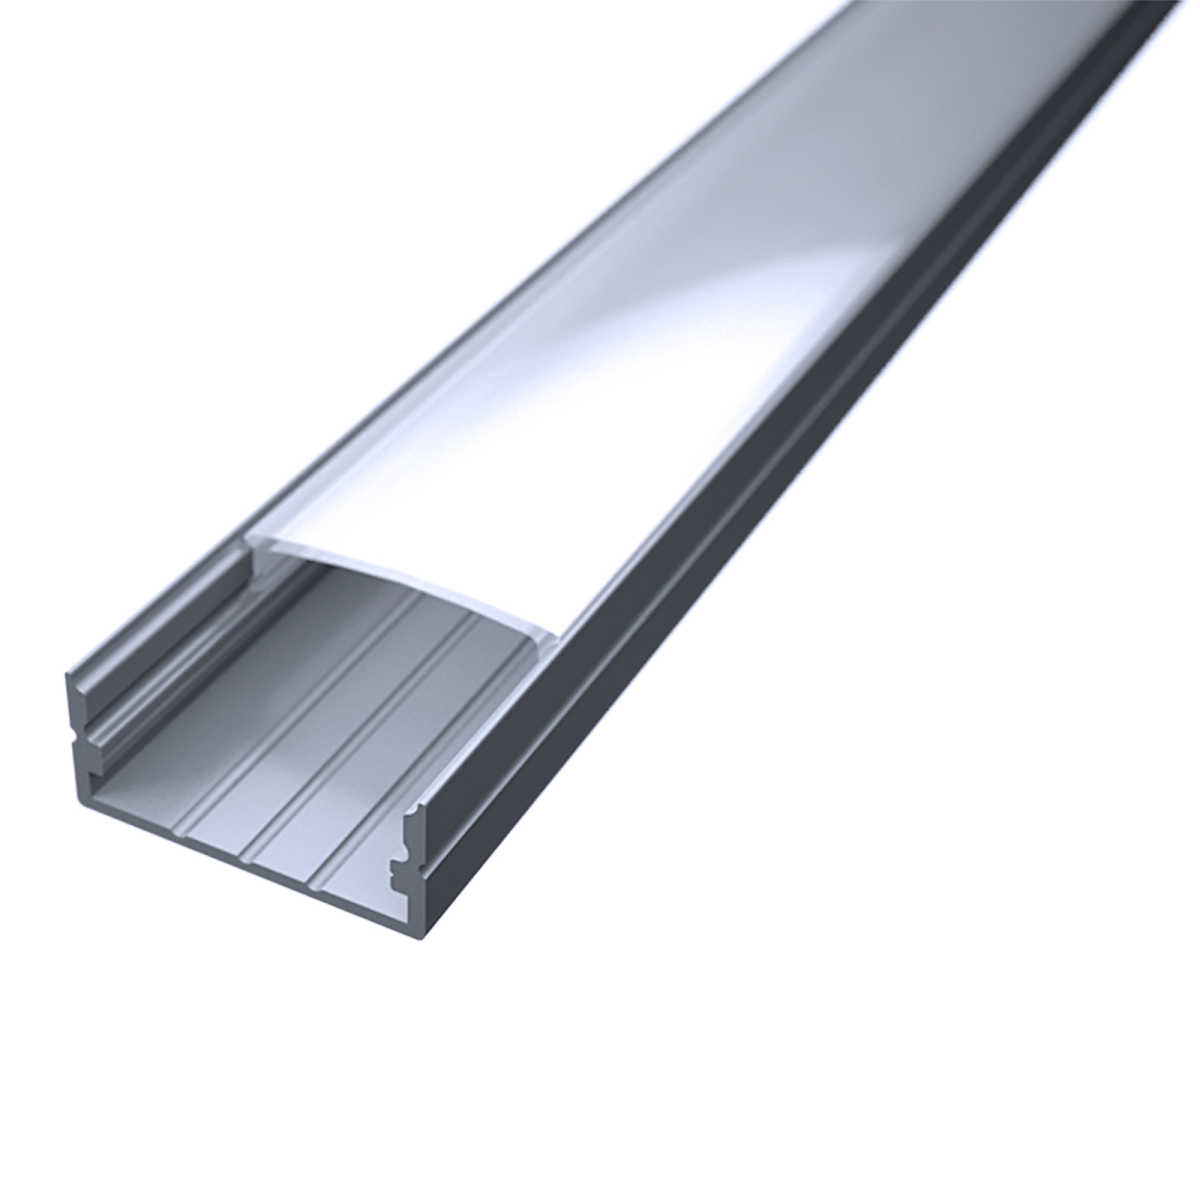 LED Flachprofil "Slim-Line max" | Abdeckung diffus | Zuschnitt auf 188cm |